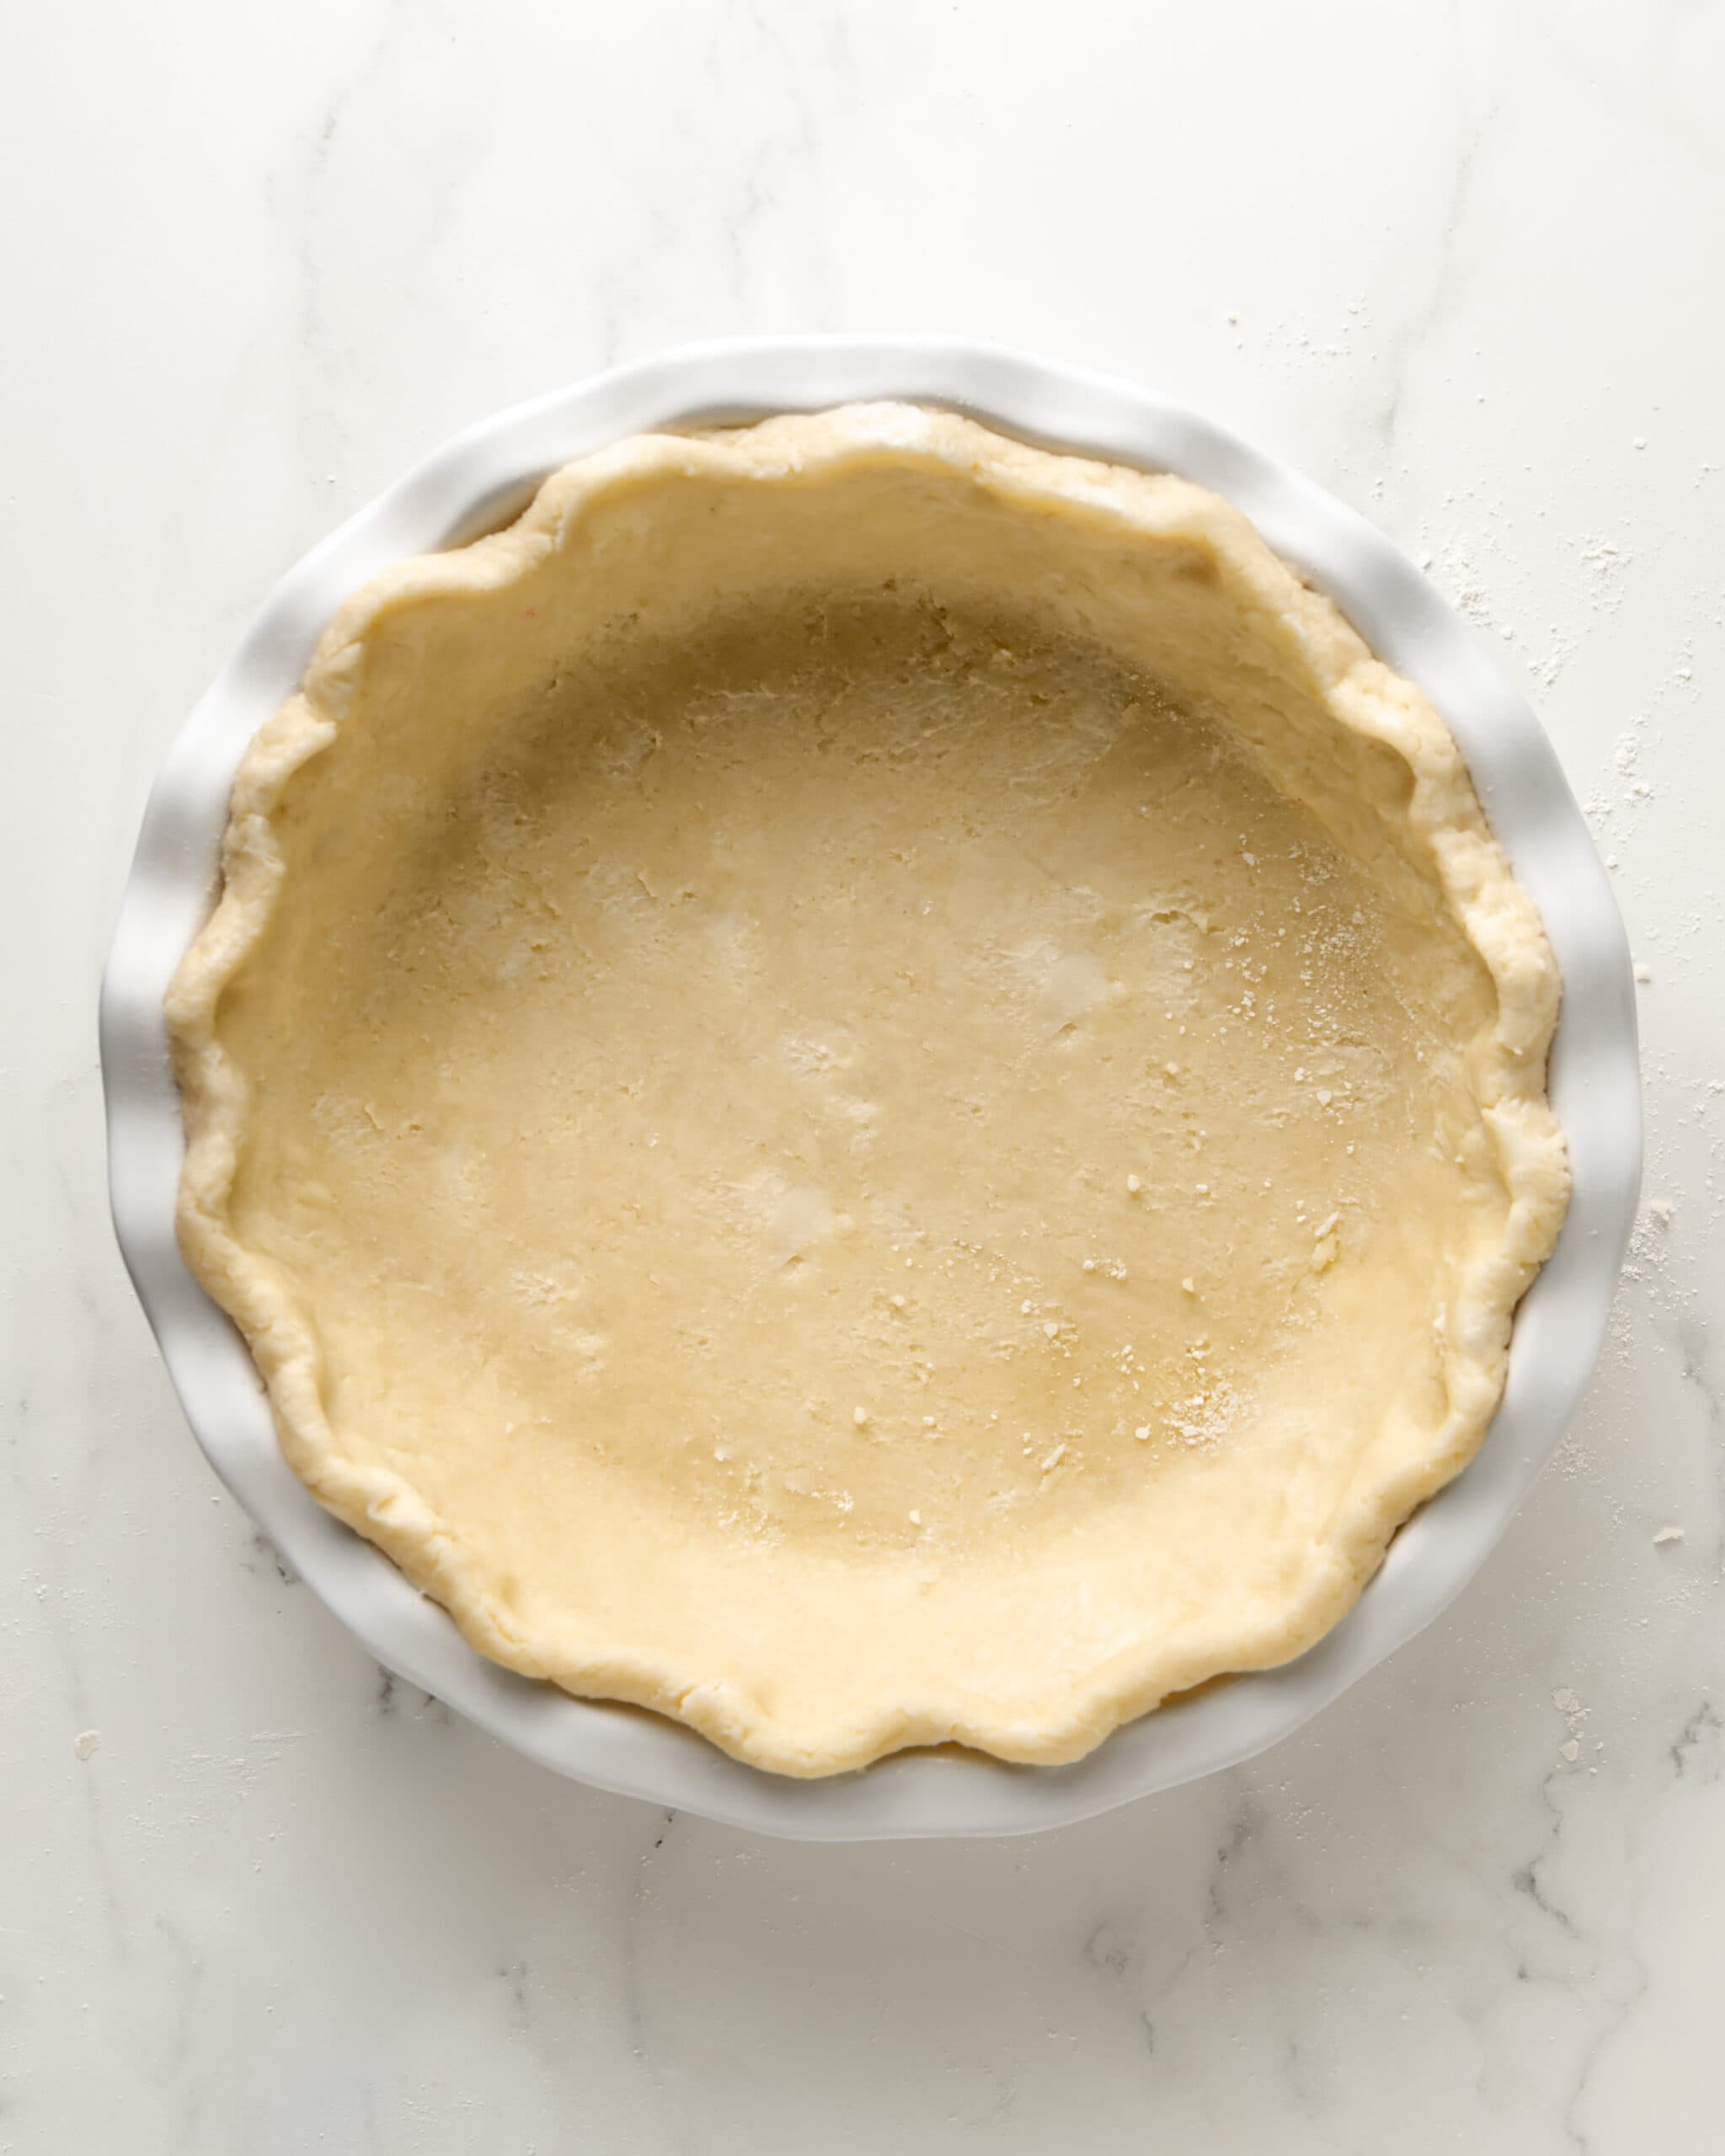 Gluten-free pie crust in a white ceramic pie dish. 